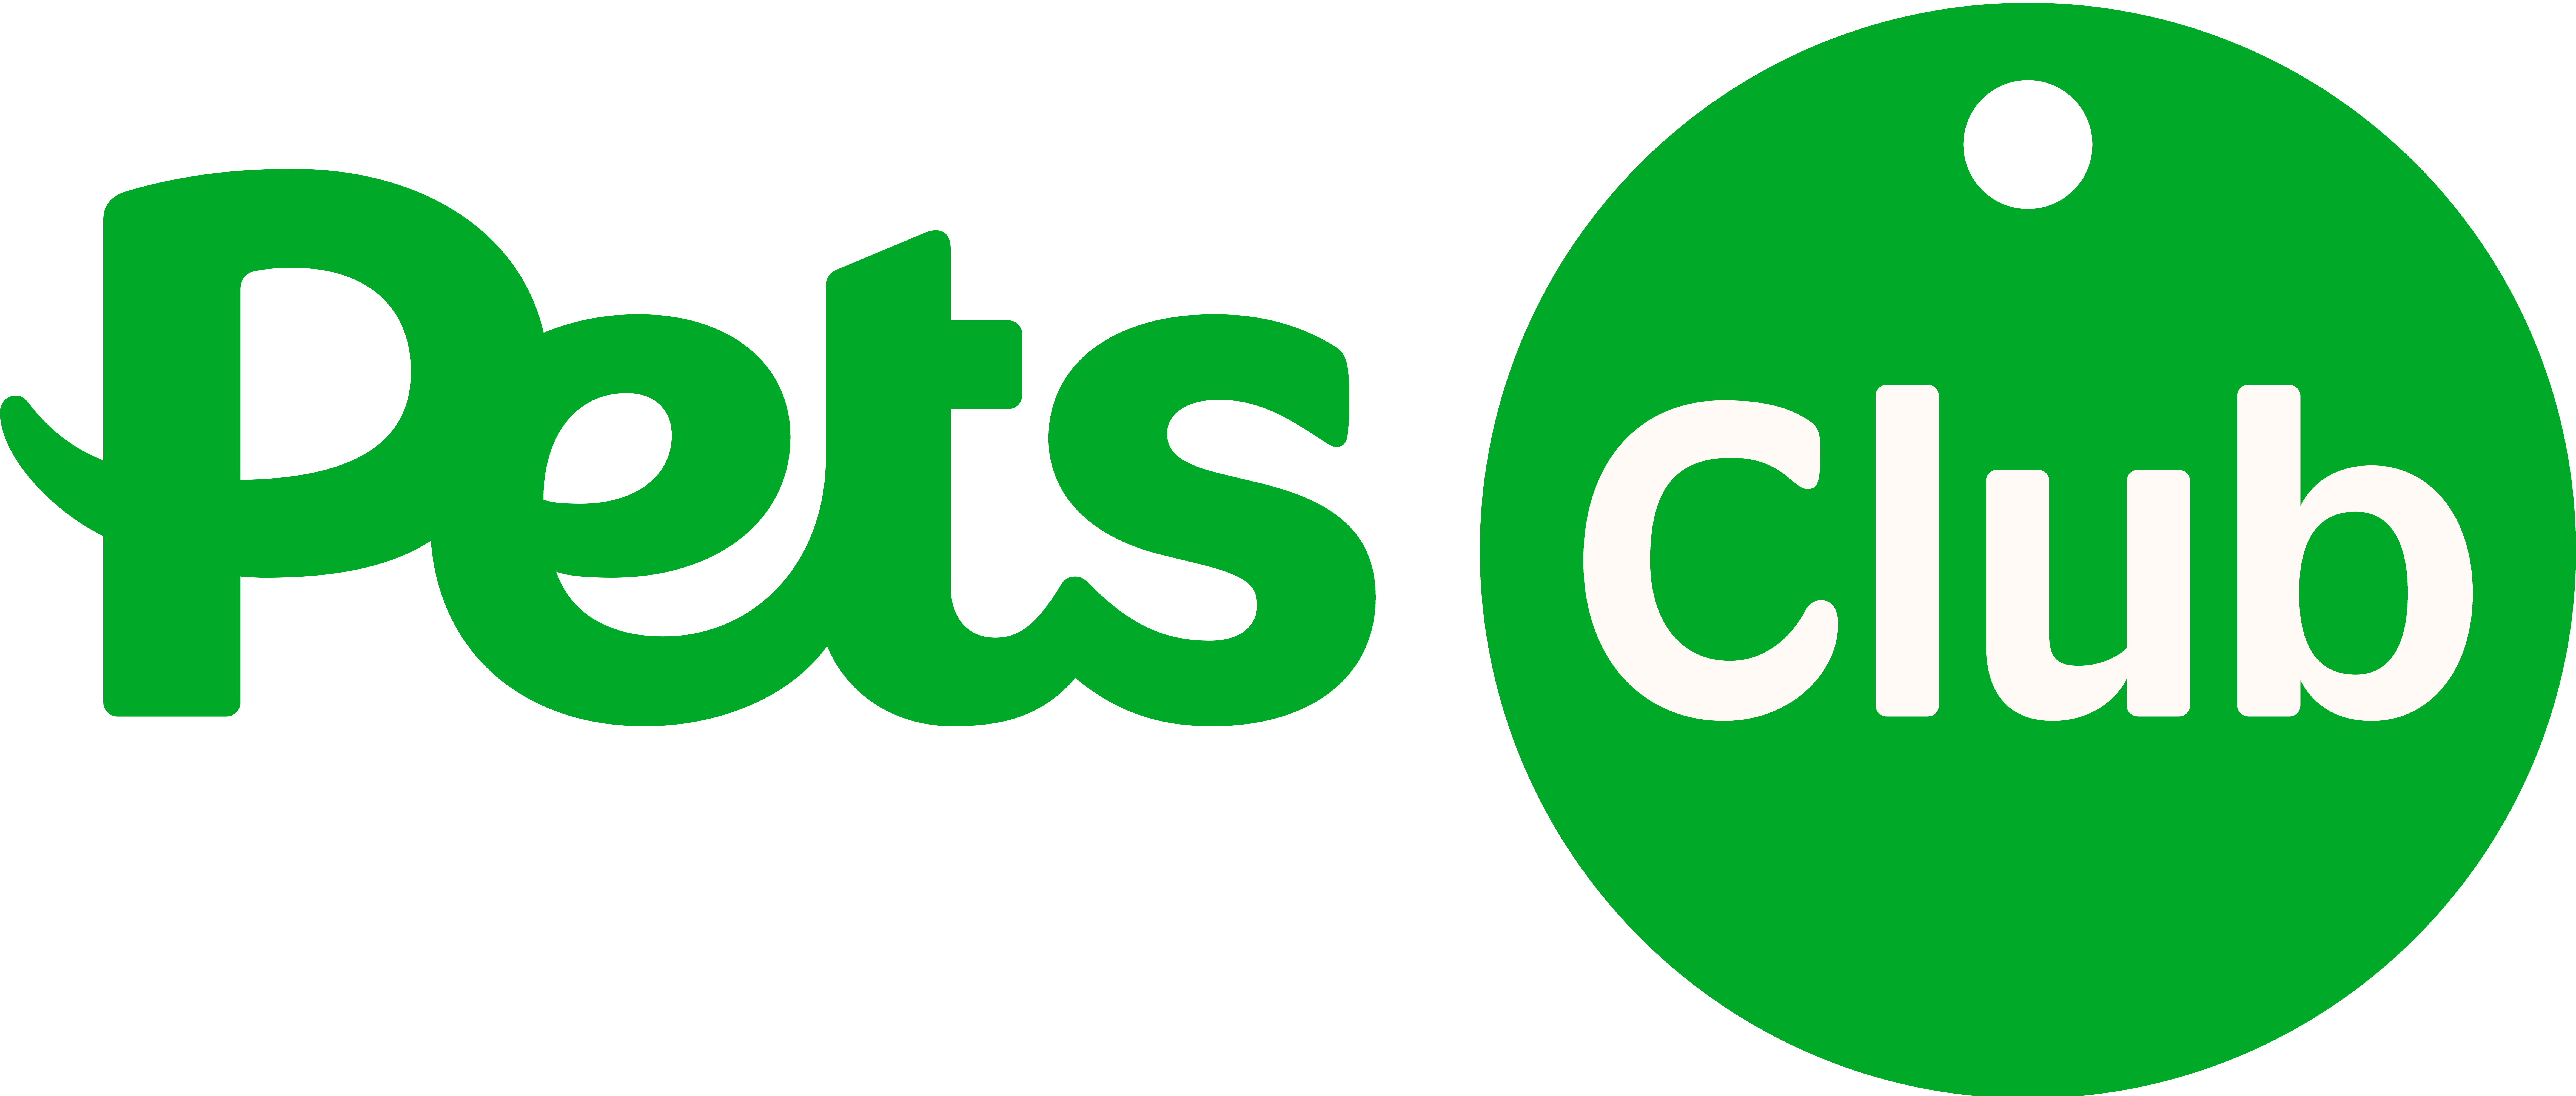 Pets club logo